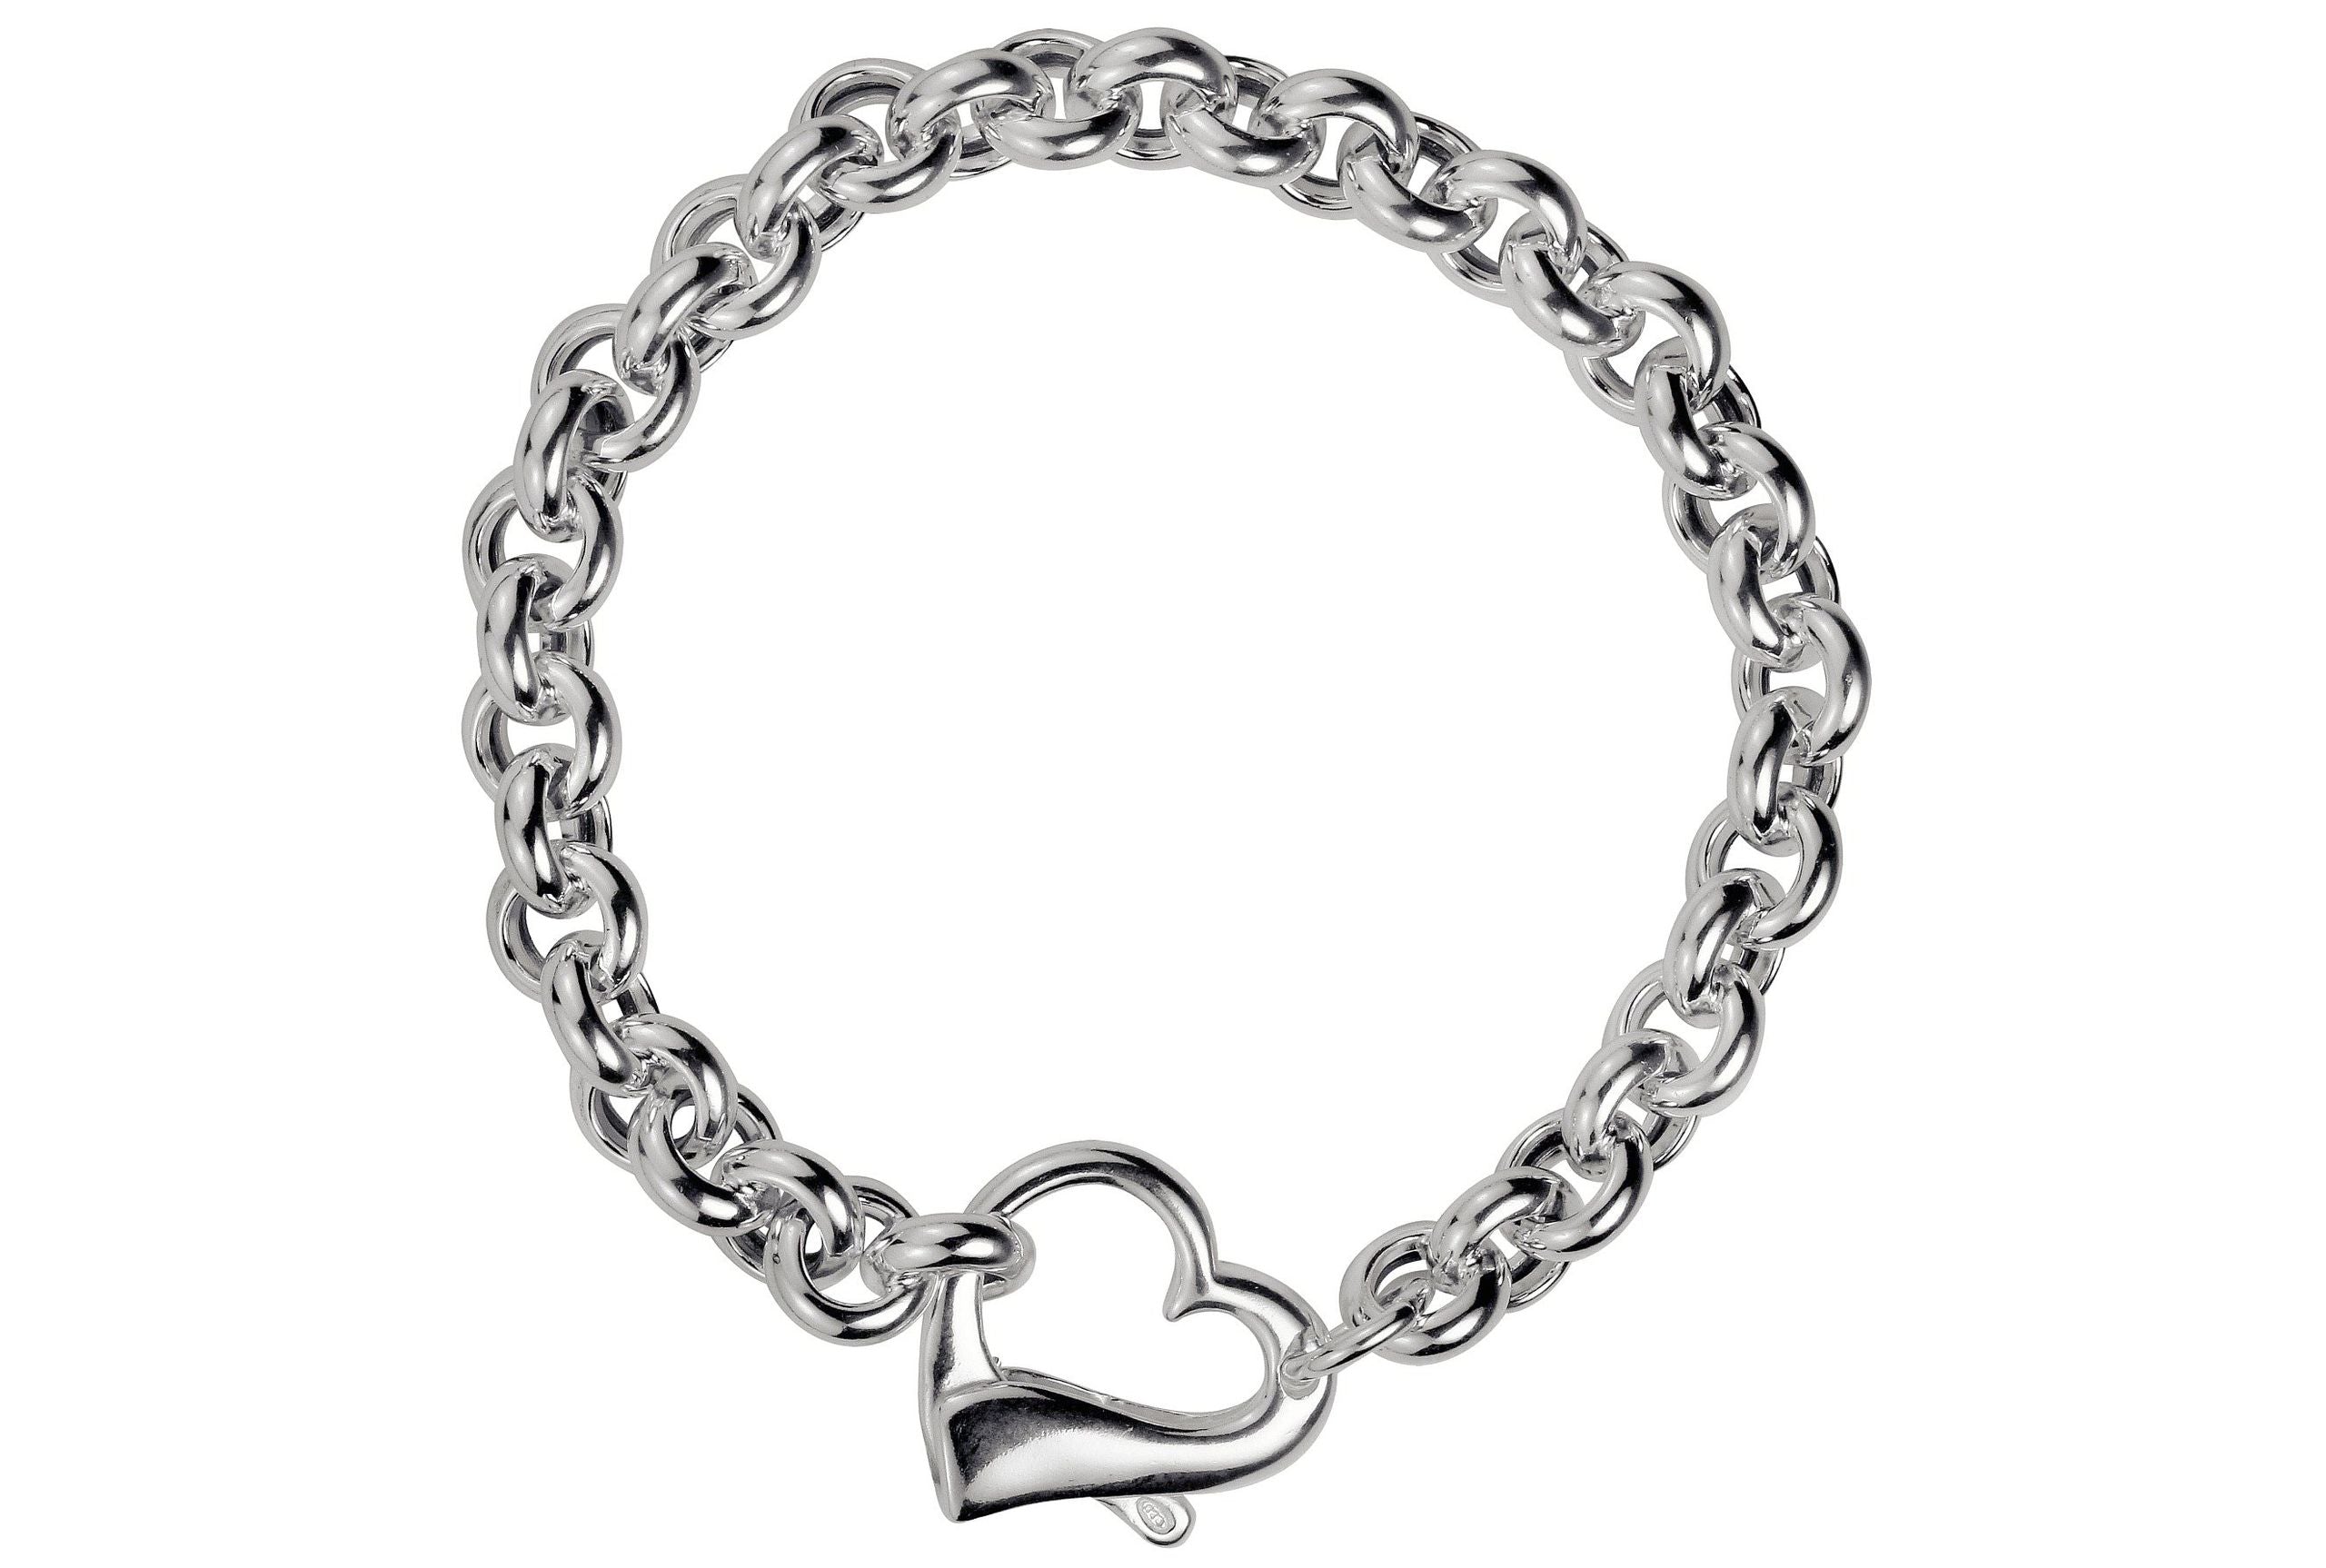 Ein massives Herzarmband aus Silber für Damen mit einem dekorativen Herz als Verschluss.